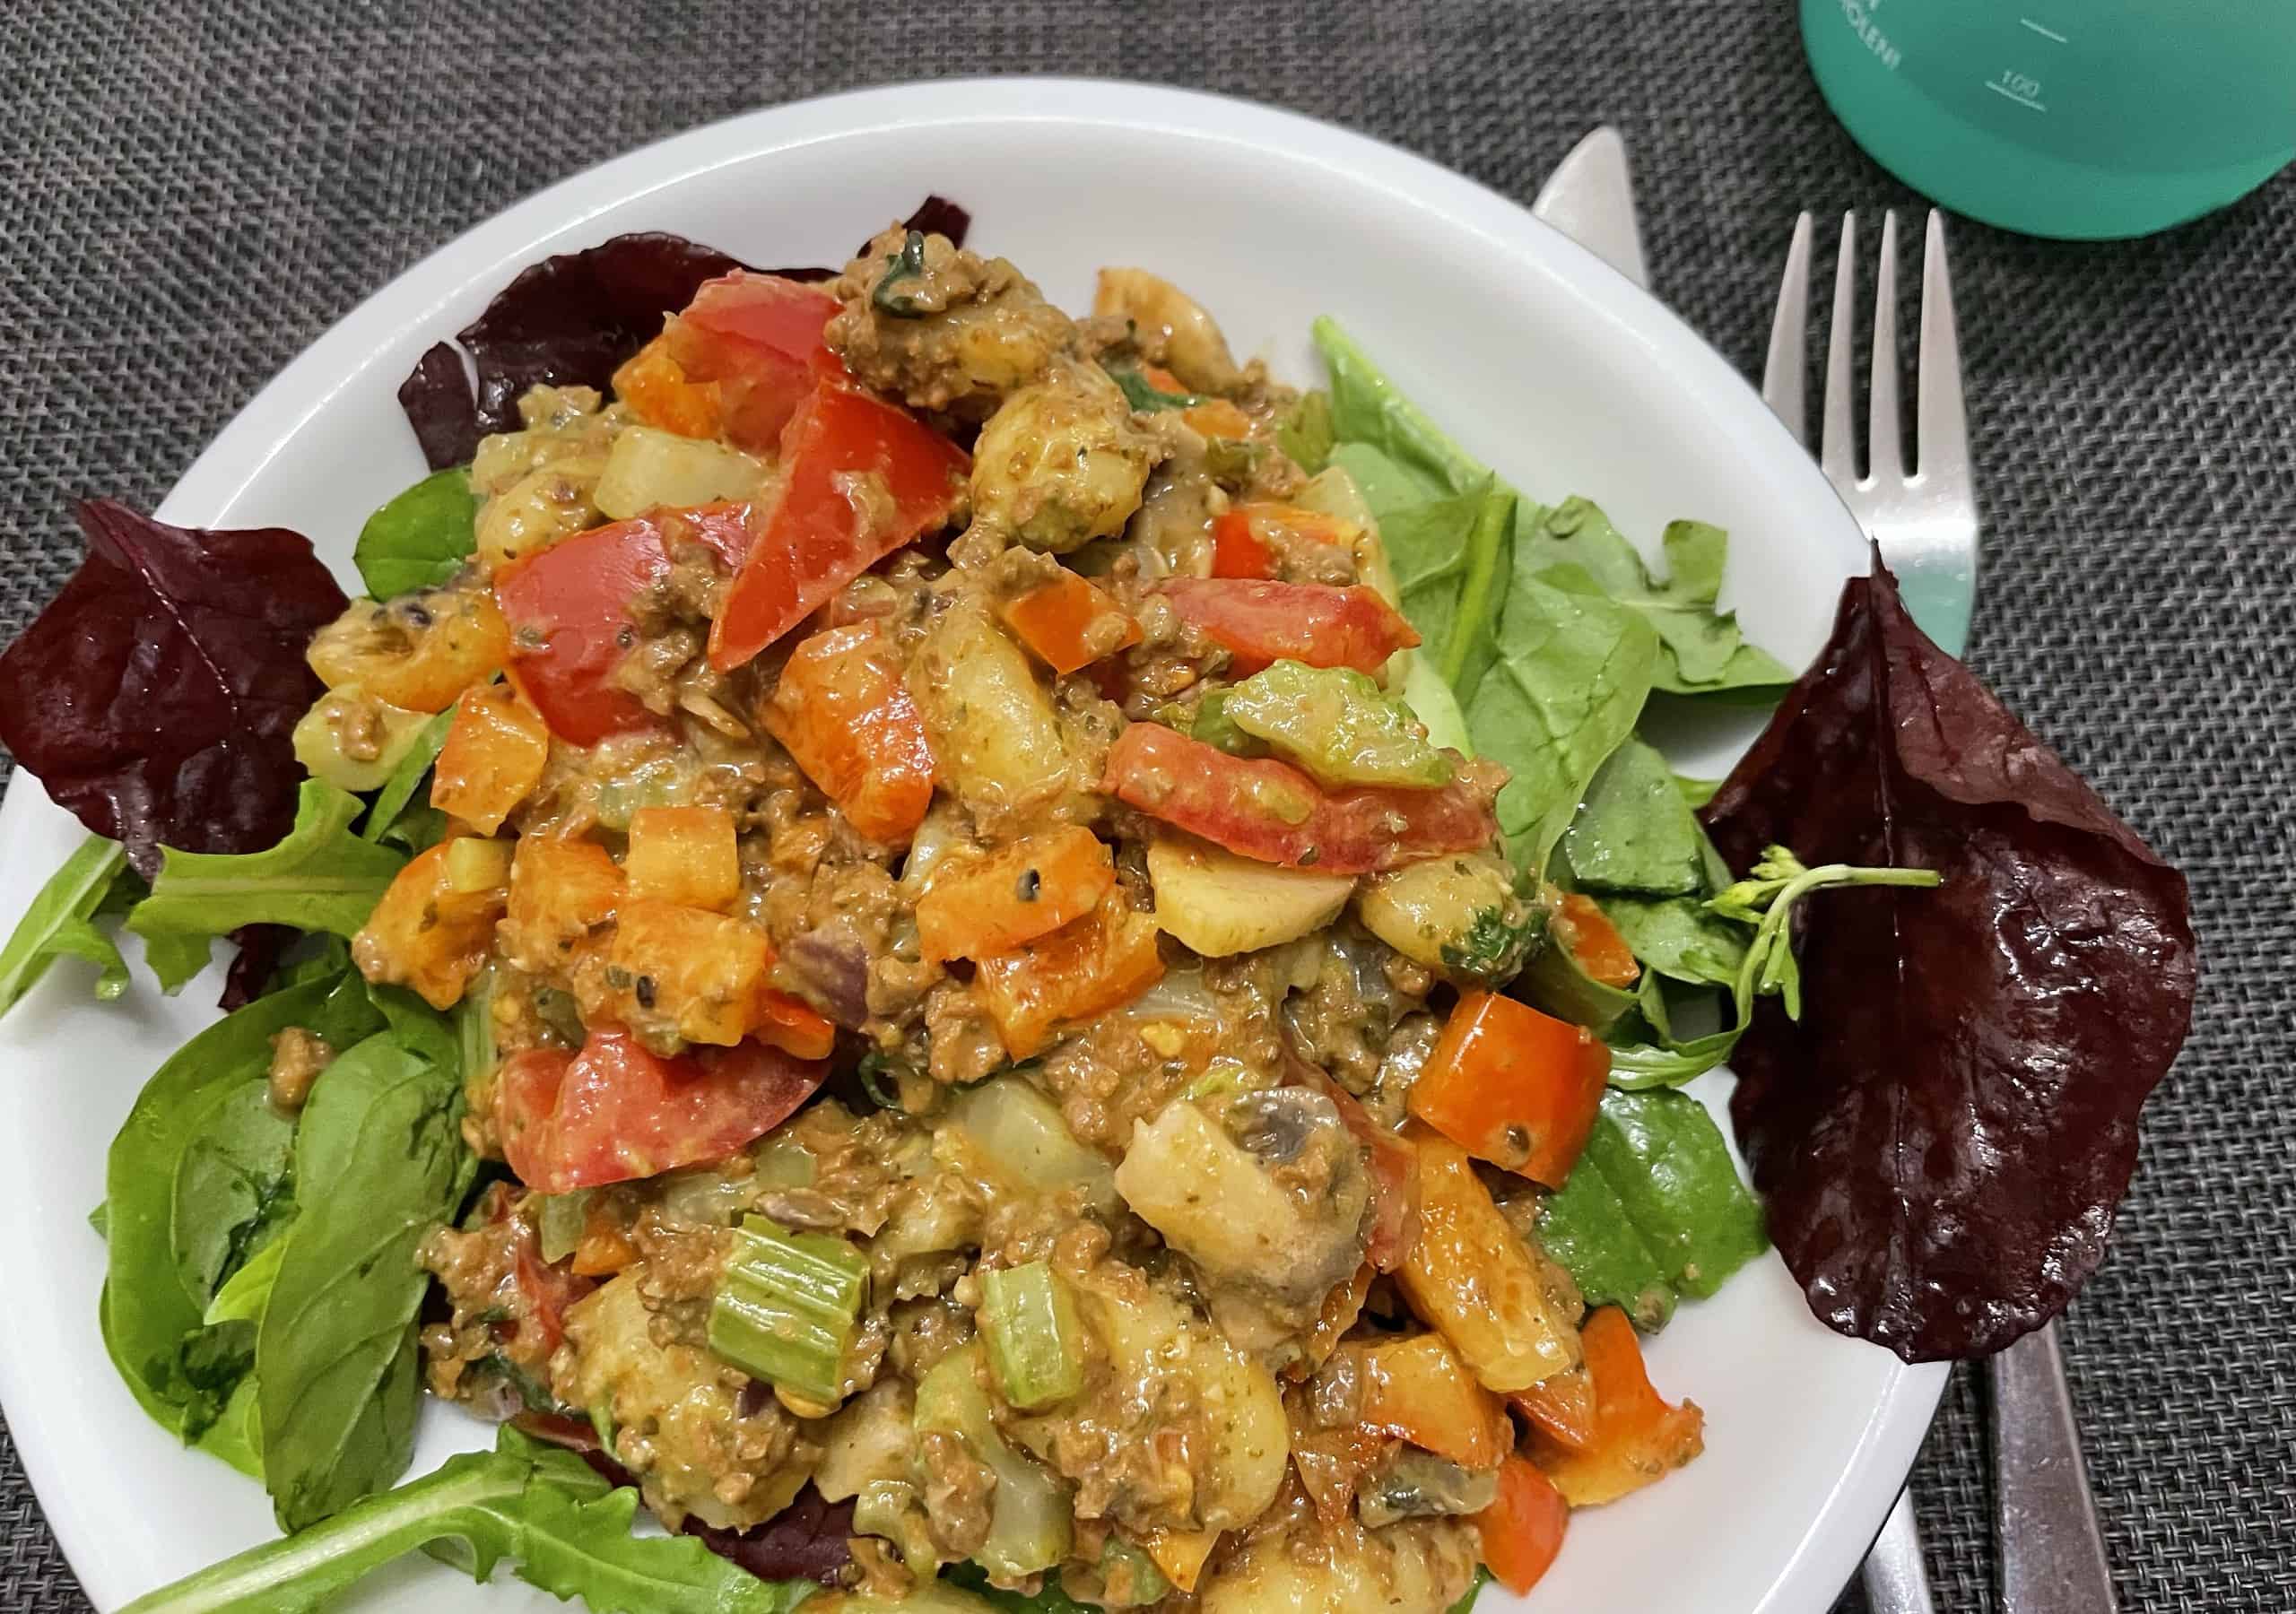 Veganes Gericht mit Champignons, Tofu und Gemüse an Salat.